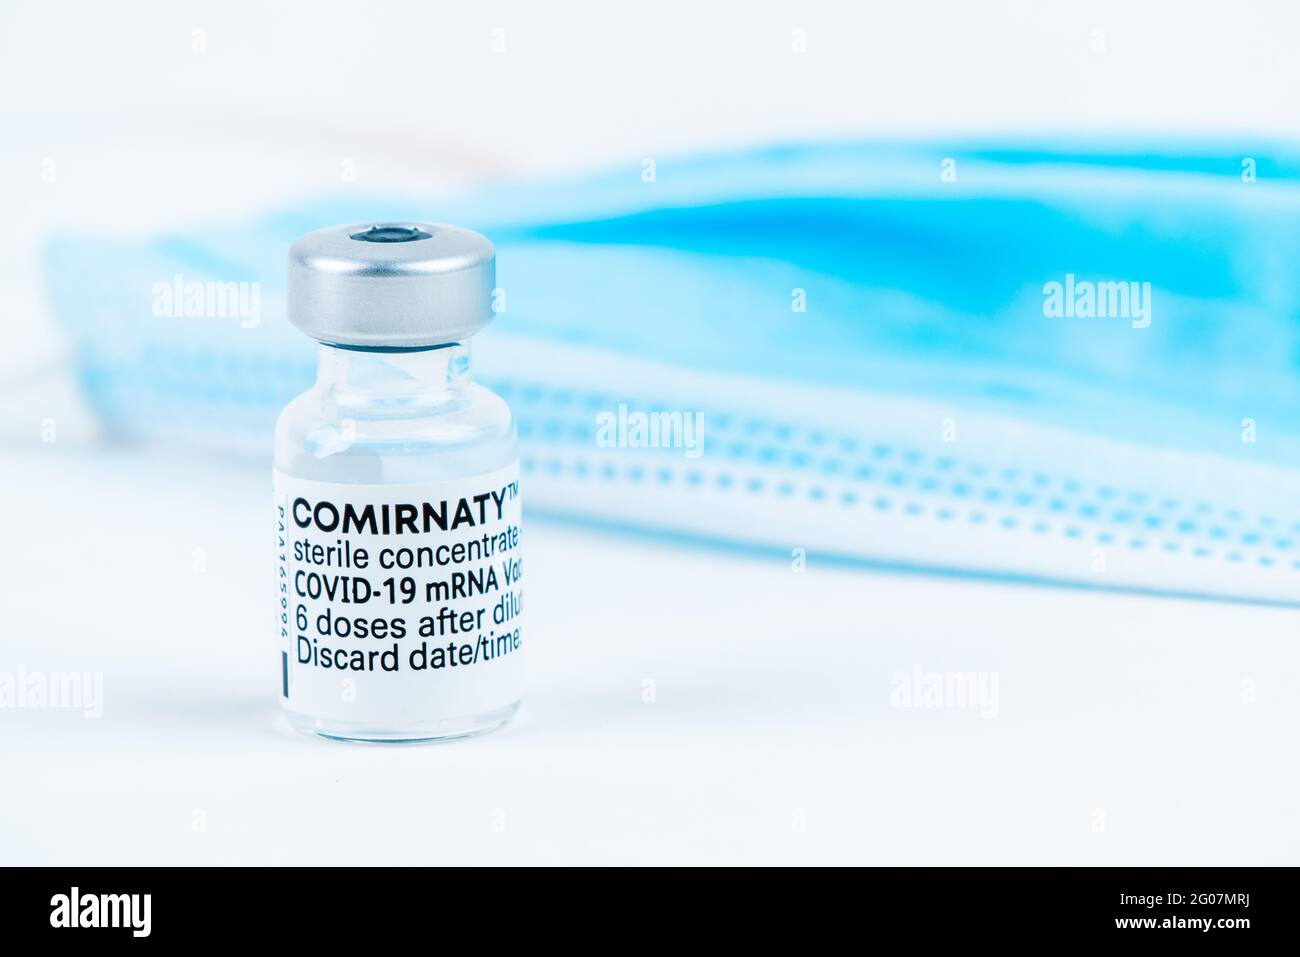 Celadna, República Checa - 05.30.2021: Ampolla de la vacuna Comirnaty de Pfizer sobre fondo blanco, con máscara azul al lado Foto de stock